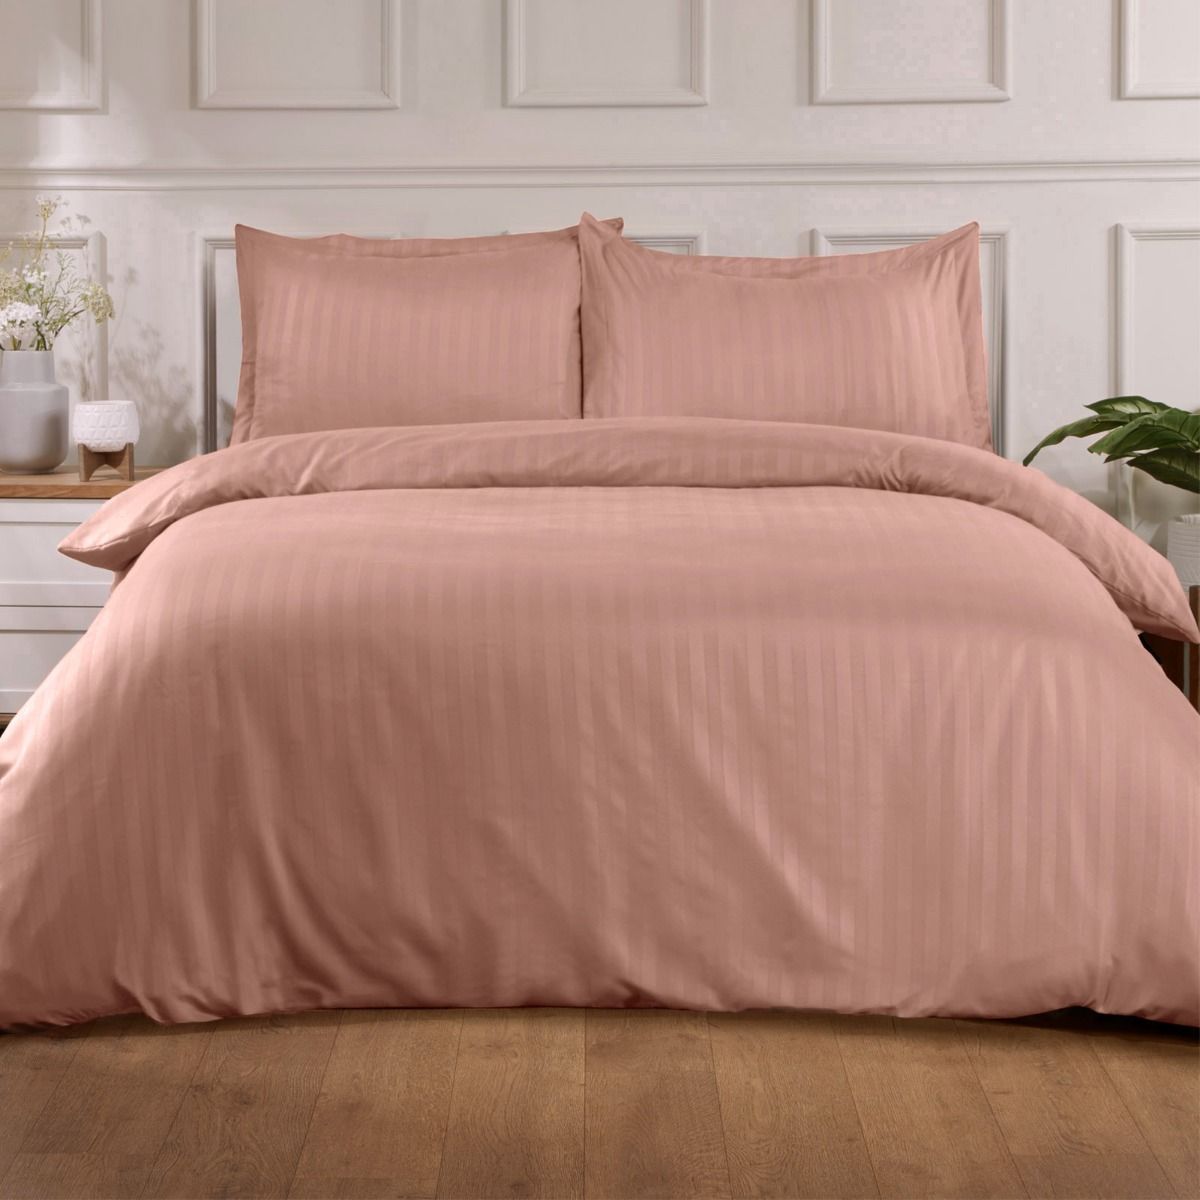 Brentfords Satin Stripe Duvet Super King Cover with Pillow Case Set - Pink